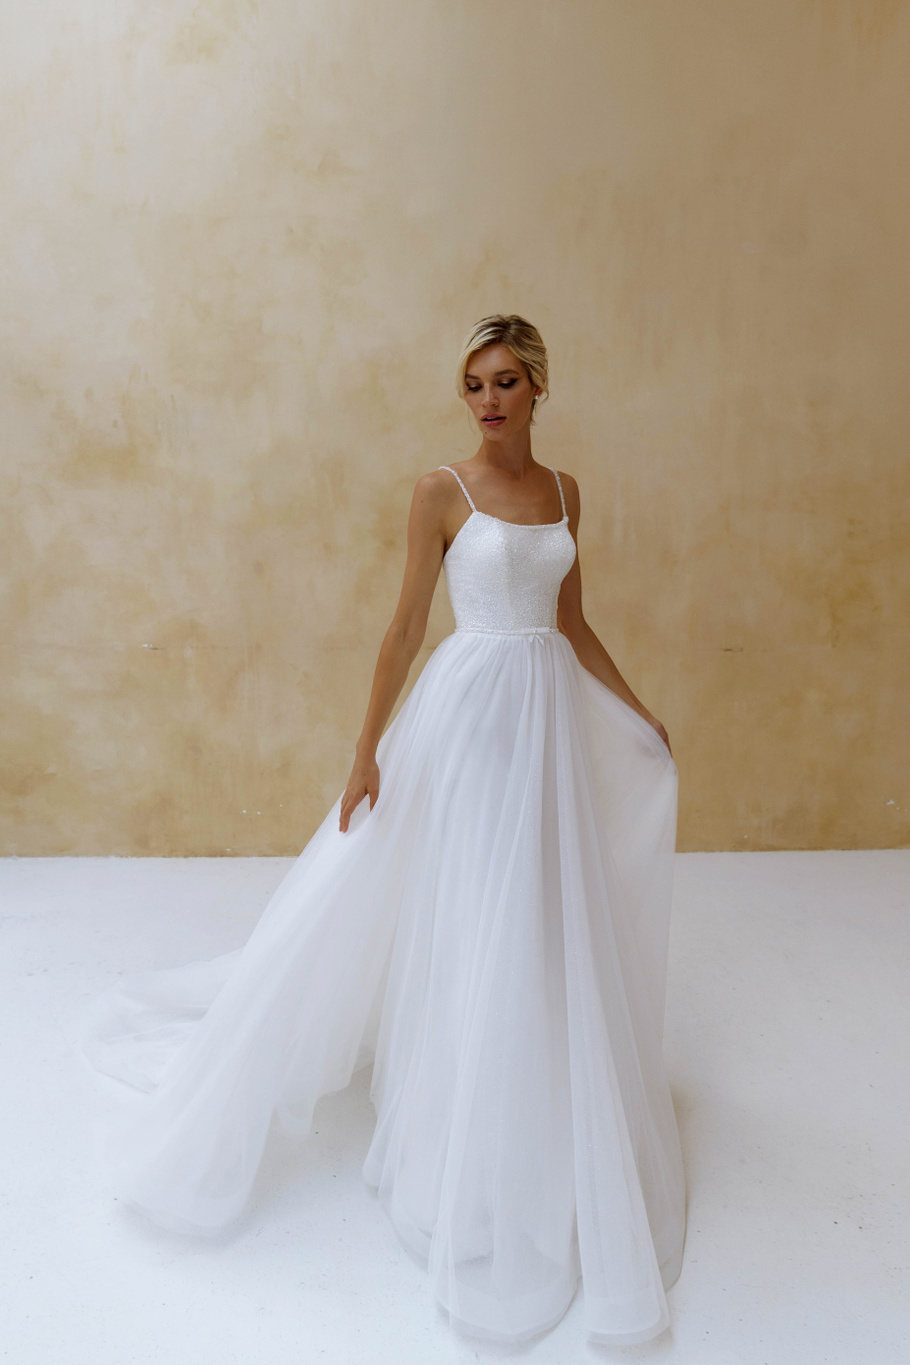 Купить свадебное платье «Линэ» Наталья Романова из коллекции Блаш Бриз 2022 года в салоне «Мэри Трюфель»